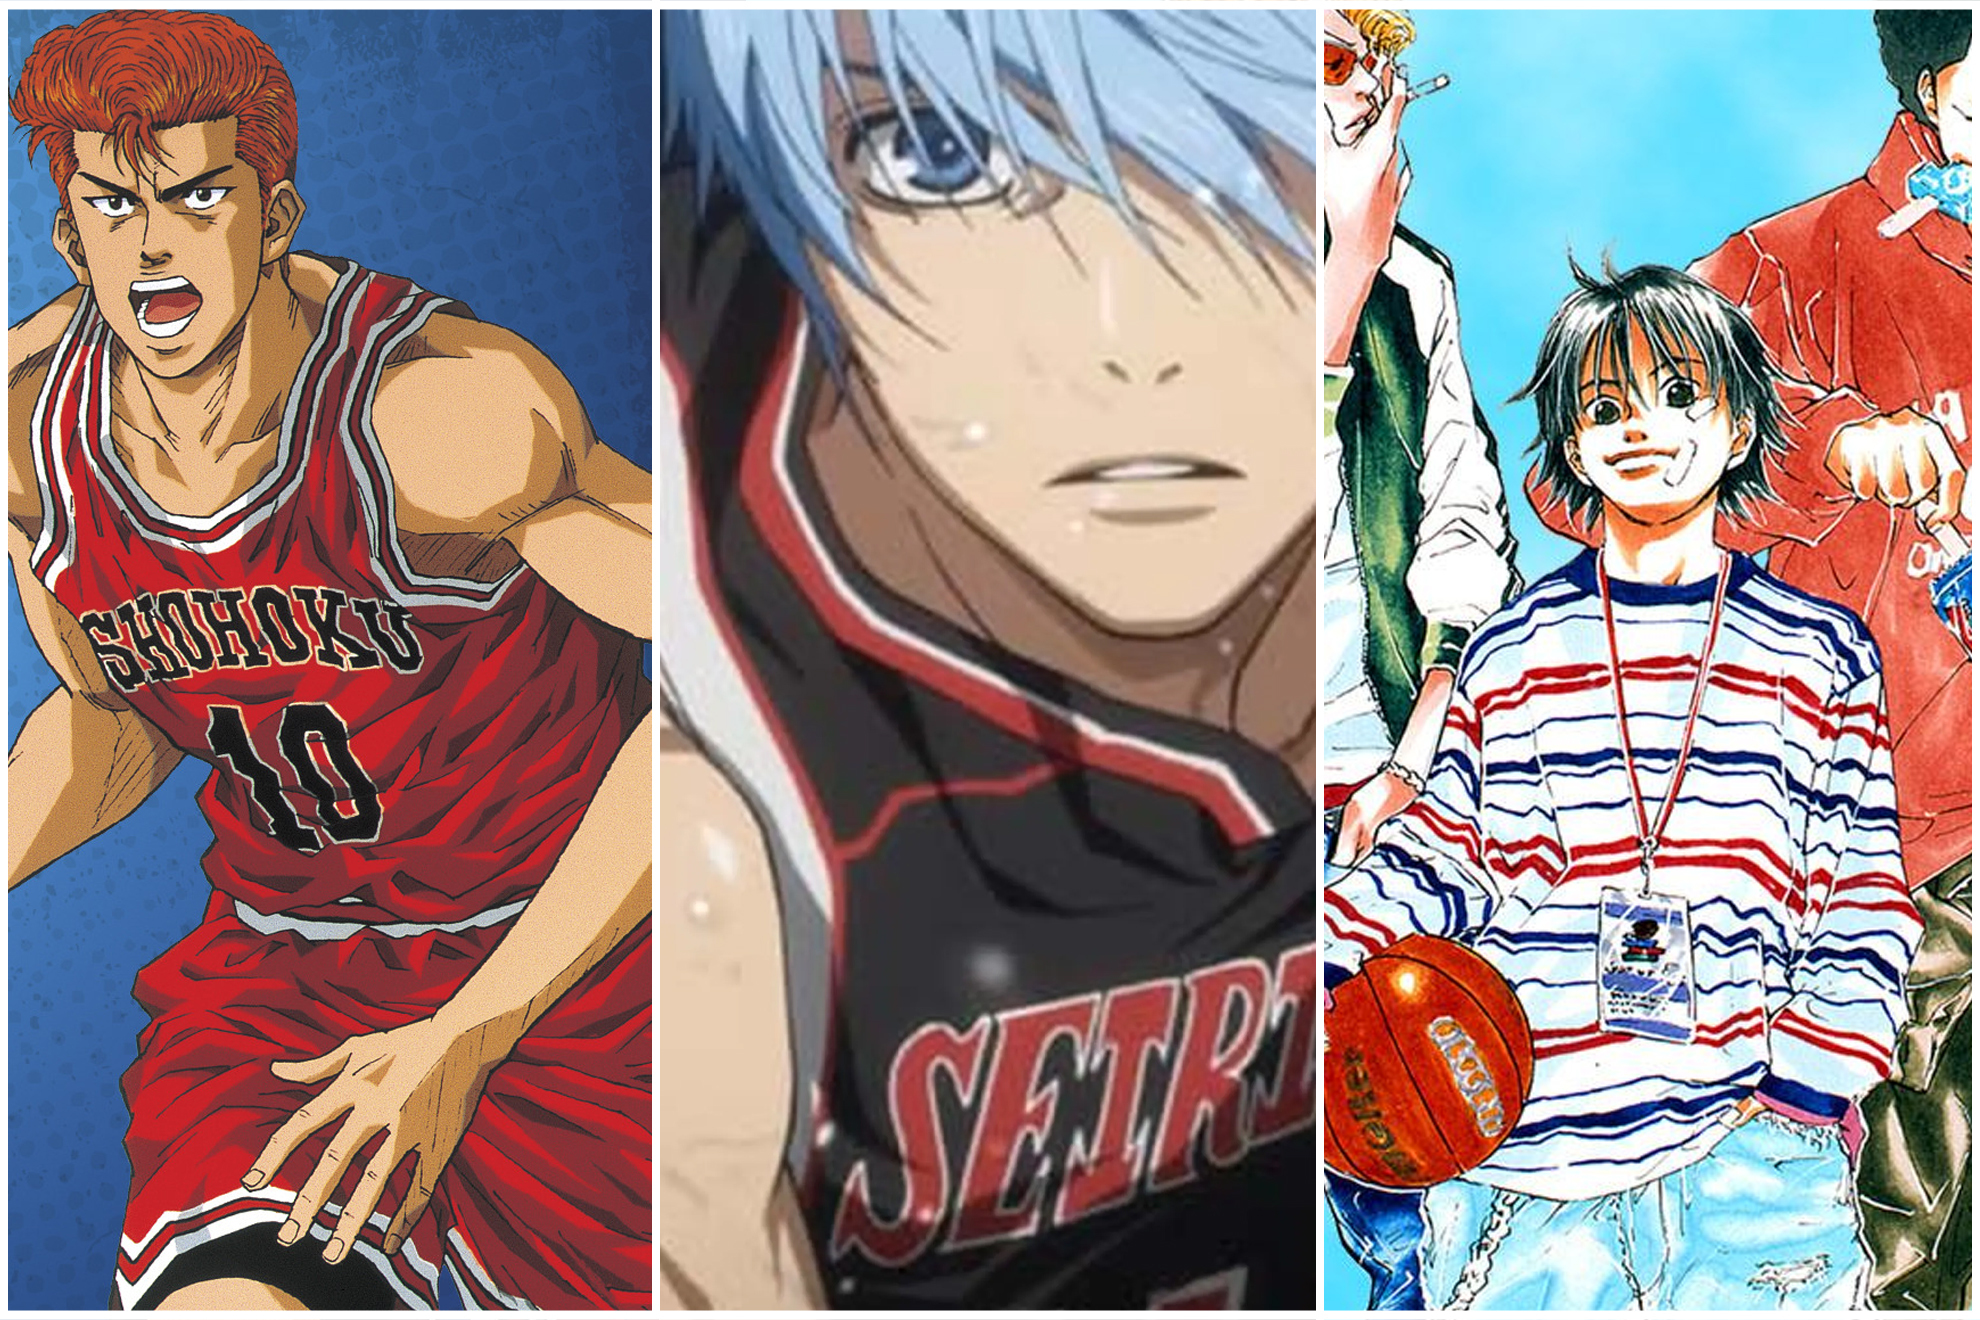 Las mejores series anime de baloncesto de la historia: Slam Dunk, Kuroko no Basket y ms